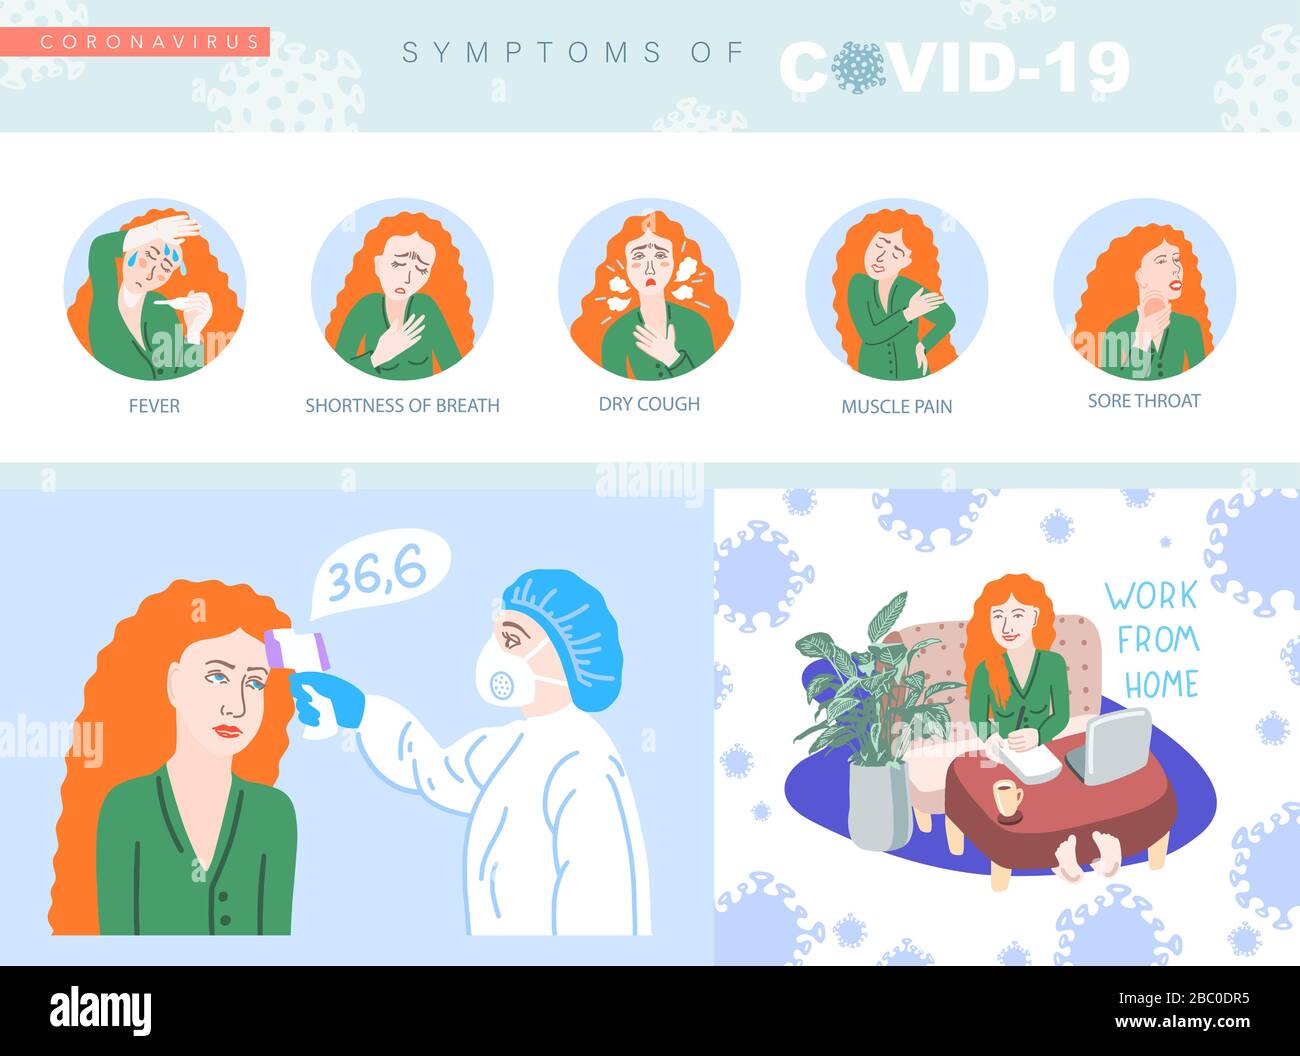 Informationsplaster über Coronavirus Covid-19, Quarantäne Motivationssammlung, 2019-nCoV wuhan Virus Stock Vektor